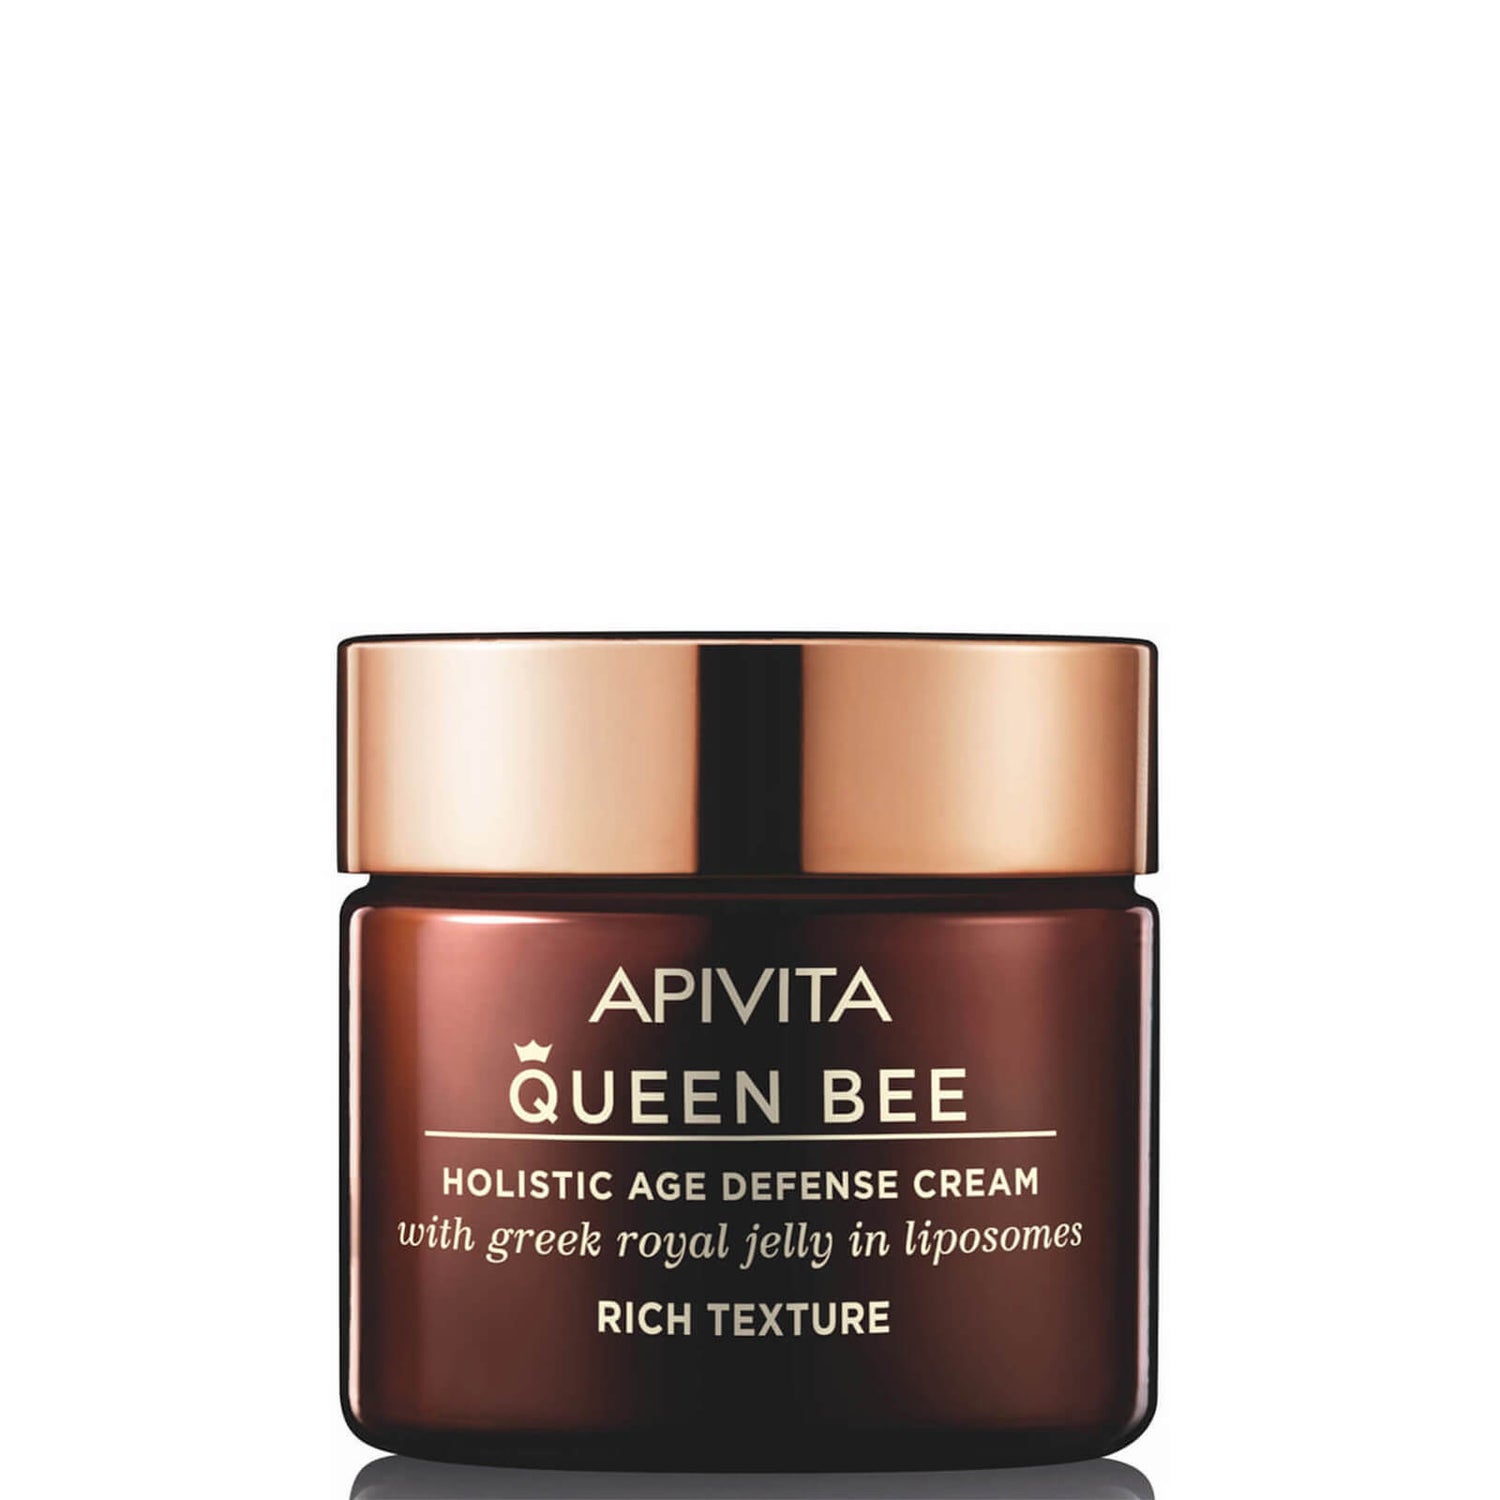 Creme Rico contra Sinais de Envelhecimento Holístico Queen Bee da APIVITA - Textura Rica 50 ml